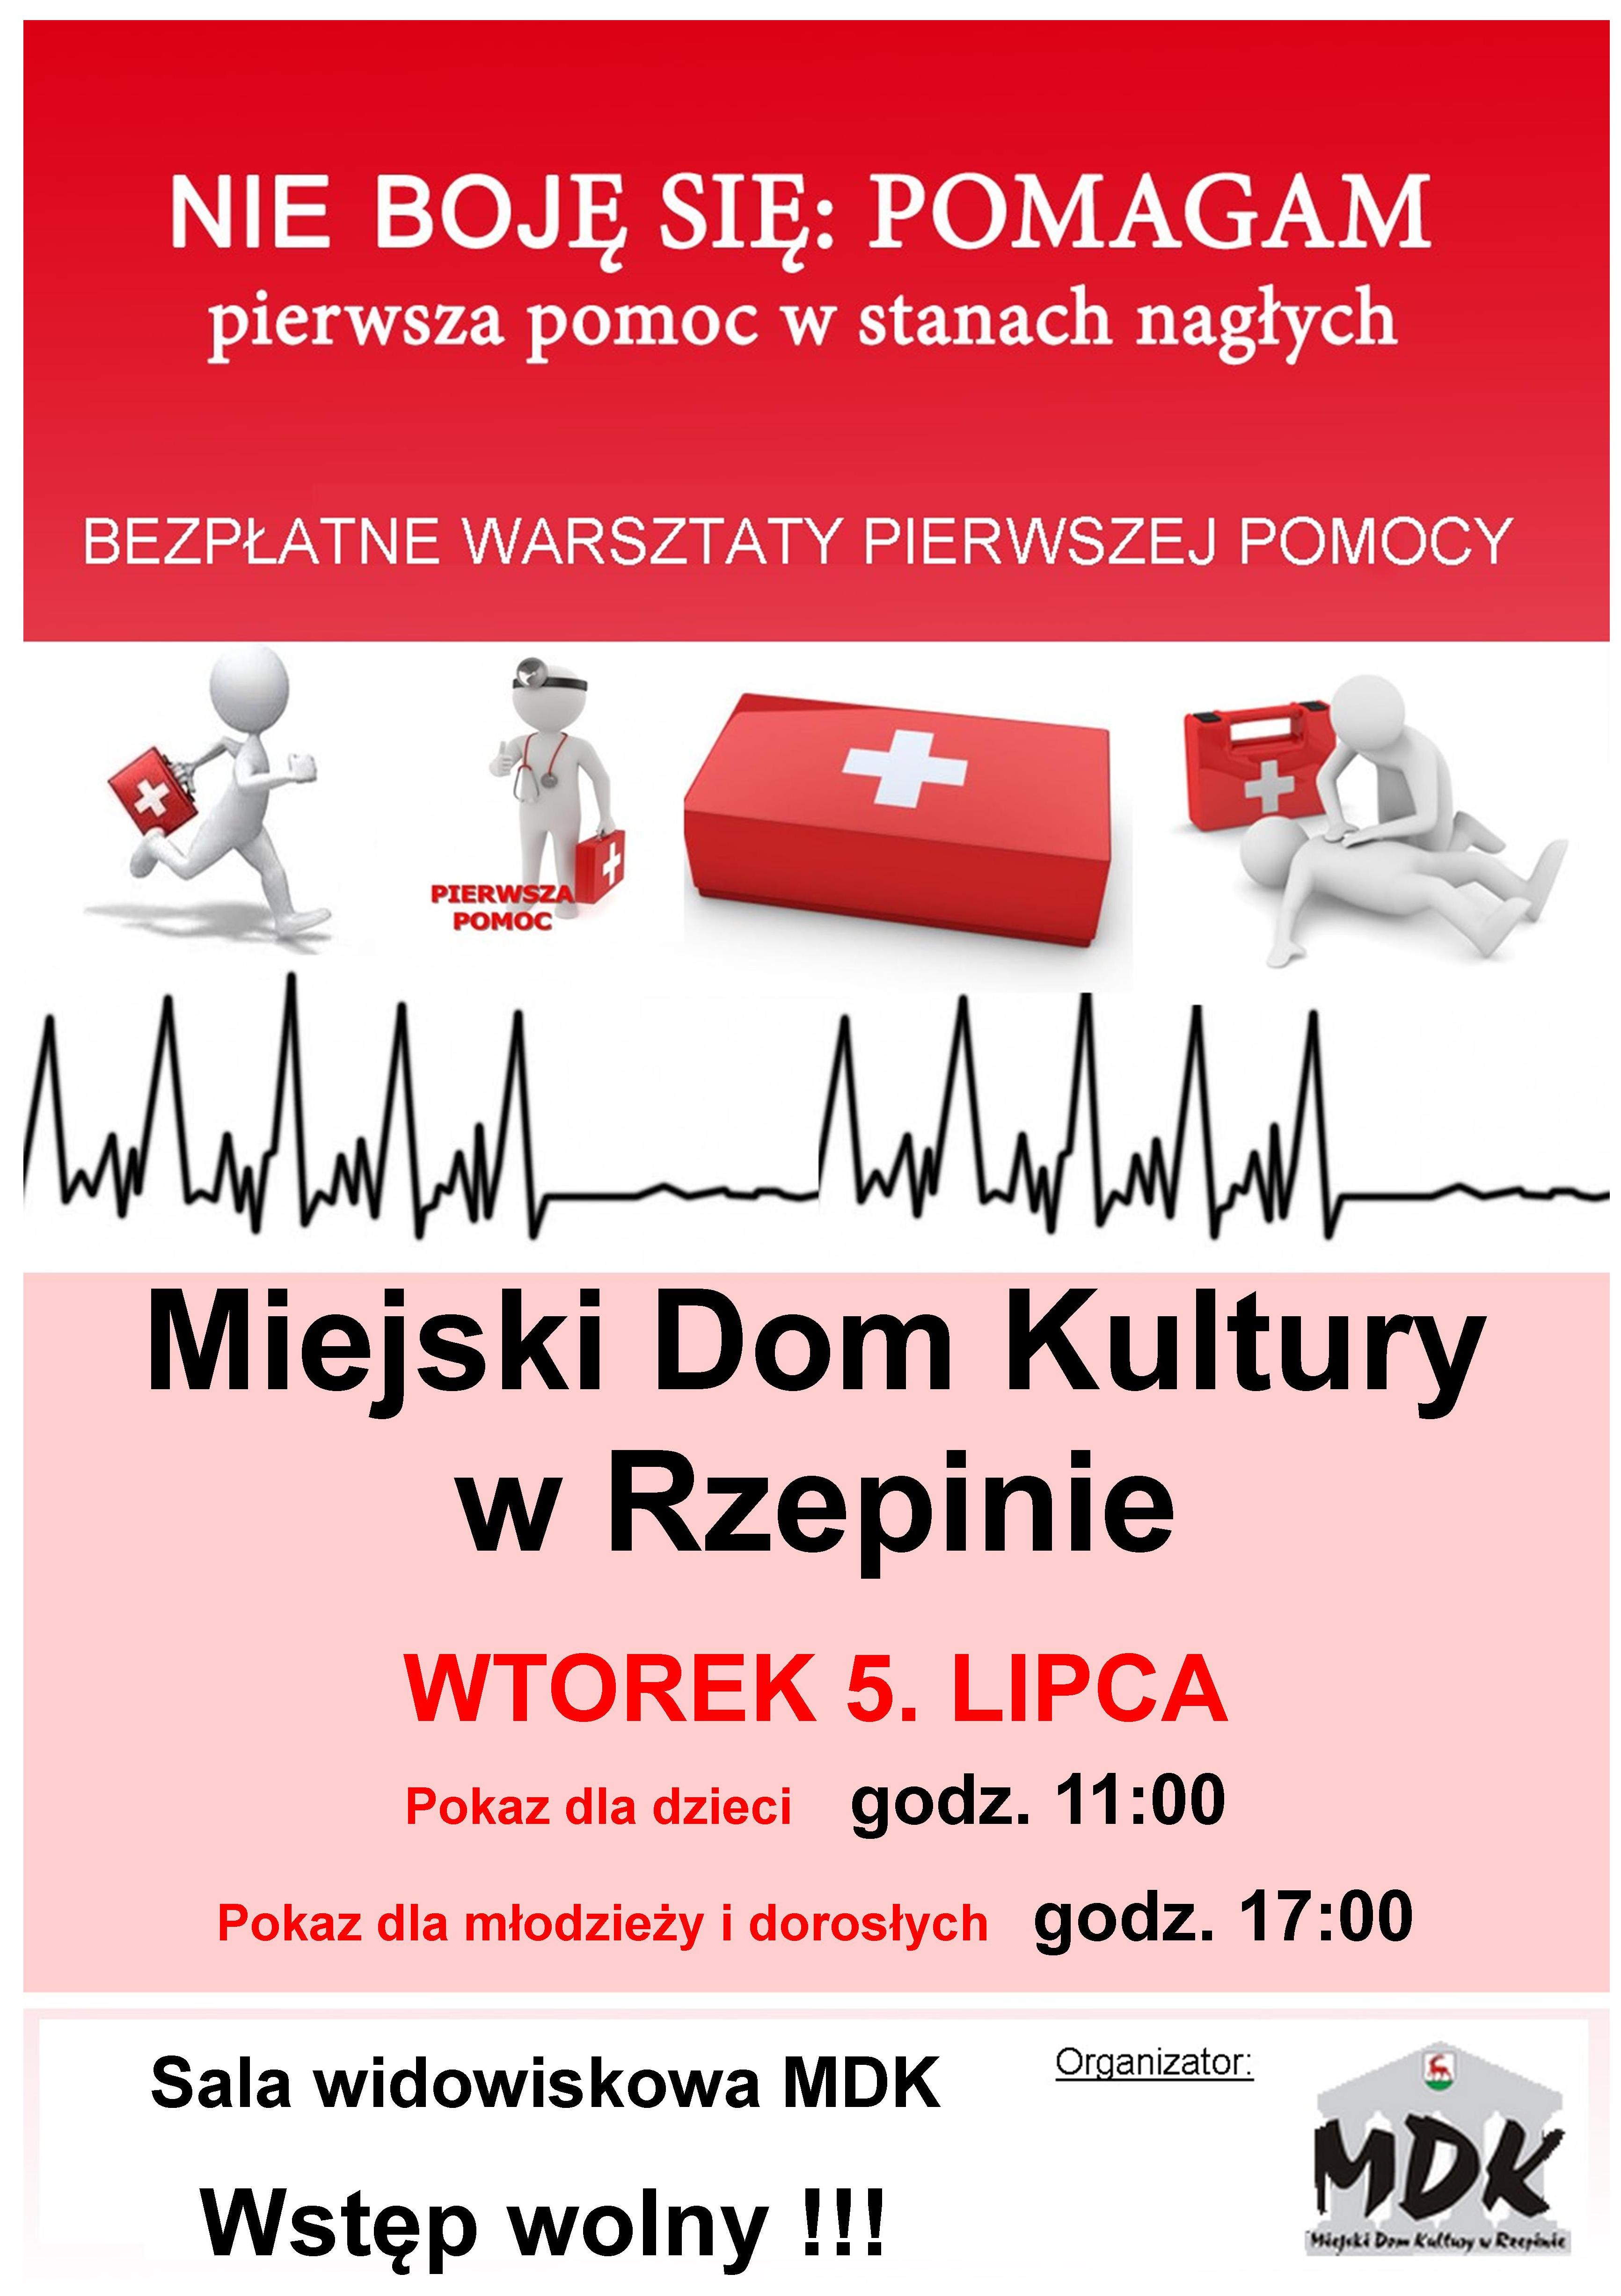 Ilustracja do informacji: Bezpłatne warsztaty pierwszej pomocy w Miejskim Domu Kultury w Rzepinie.